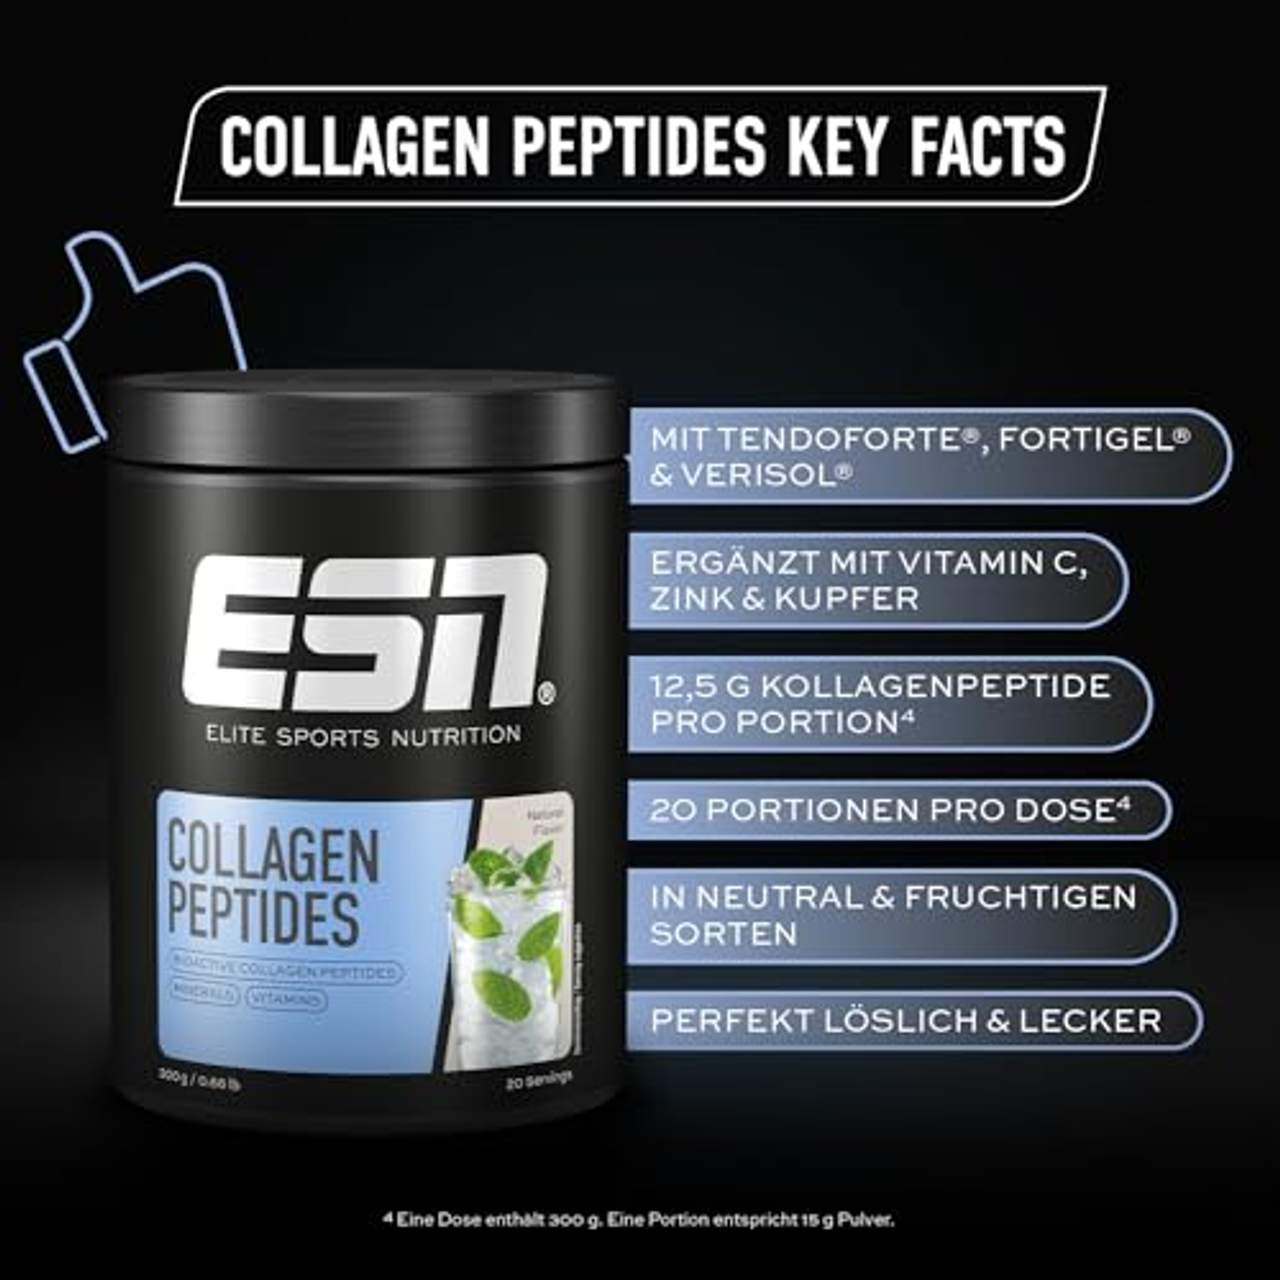 ESN Collagen Peptides 300g Natural